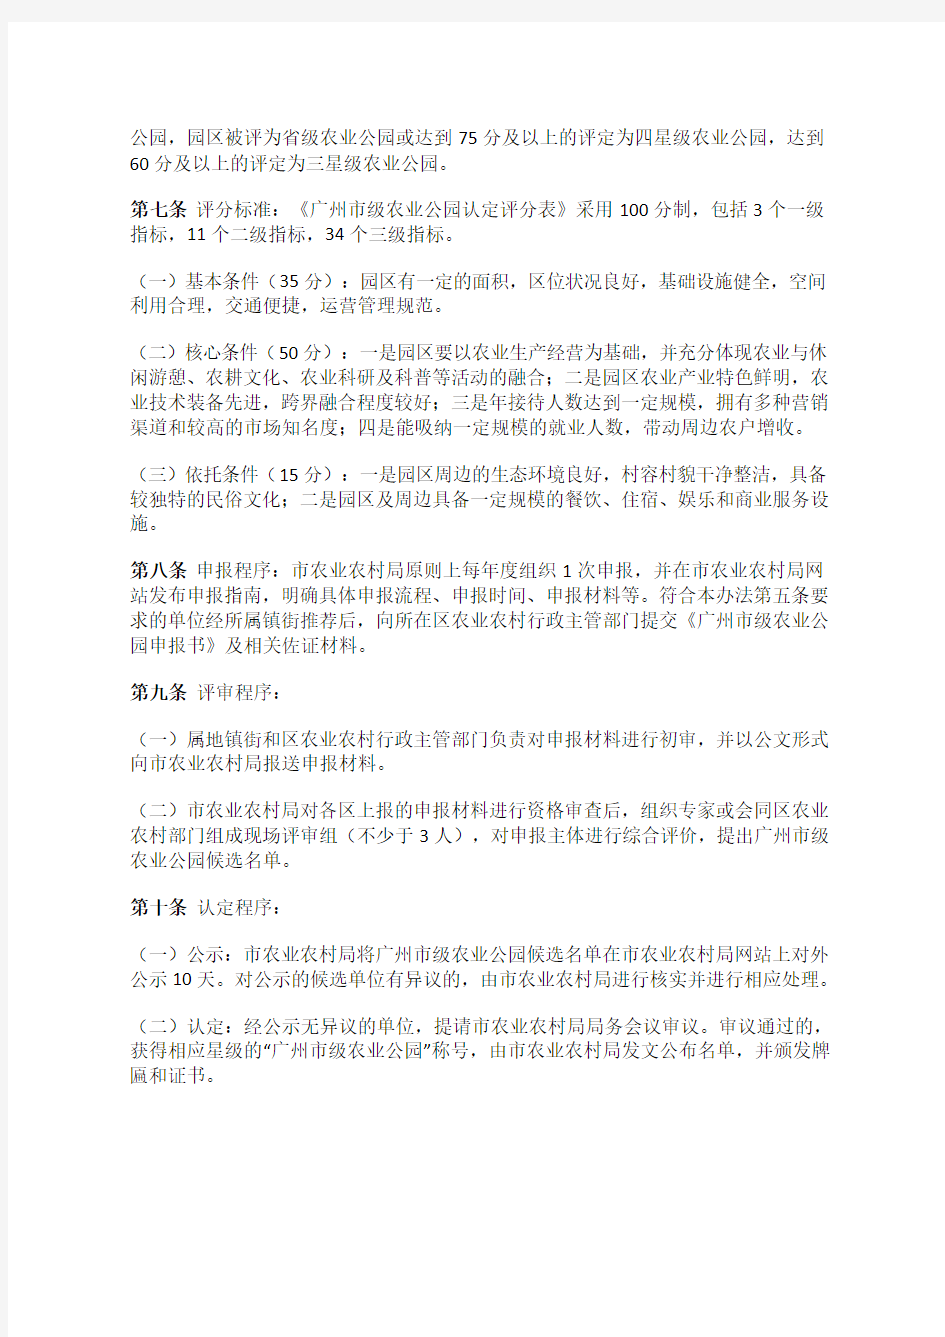 广州市农业农村局关于印发广州市级农业公园评定管理办法的通知